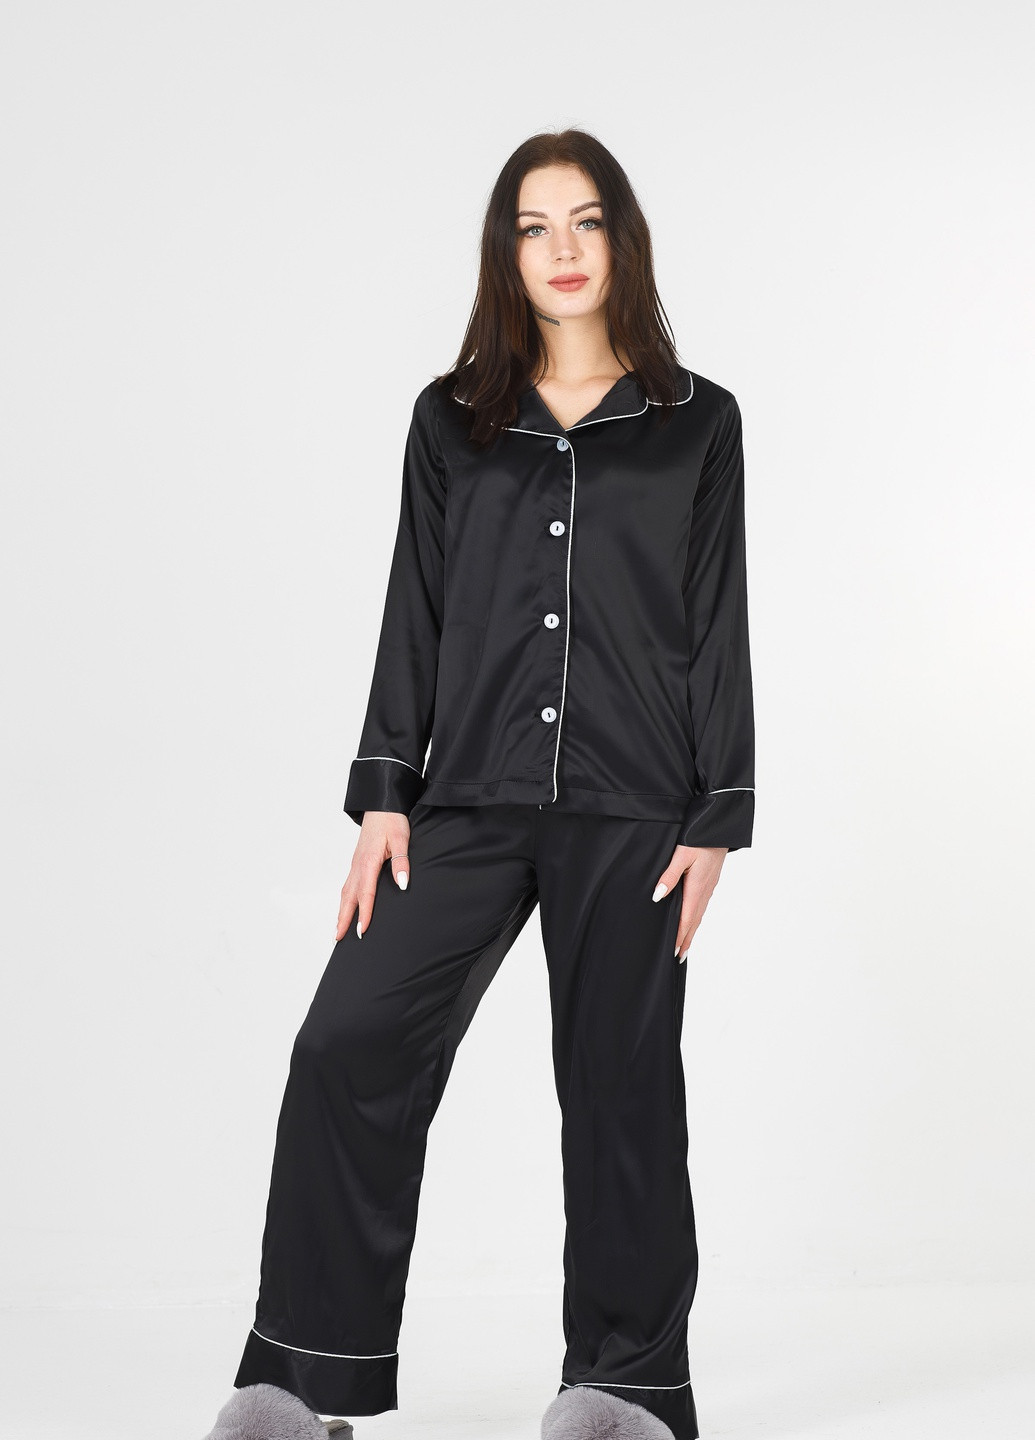 Черная всесезон черная с белым кантом пижама (рубашка + штаны) рубашка + брюки SONTSVIT